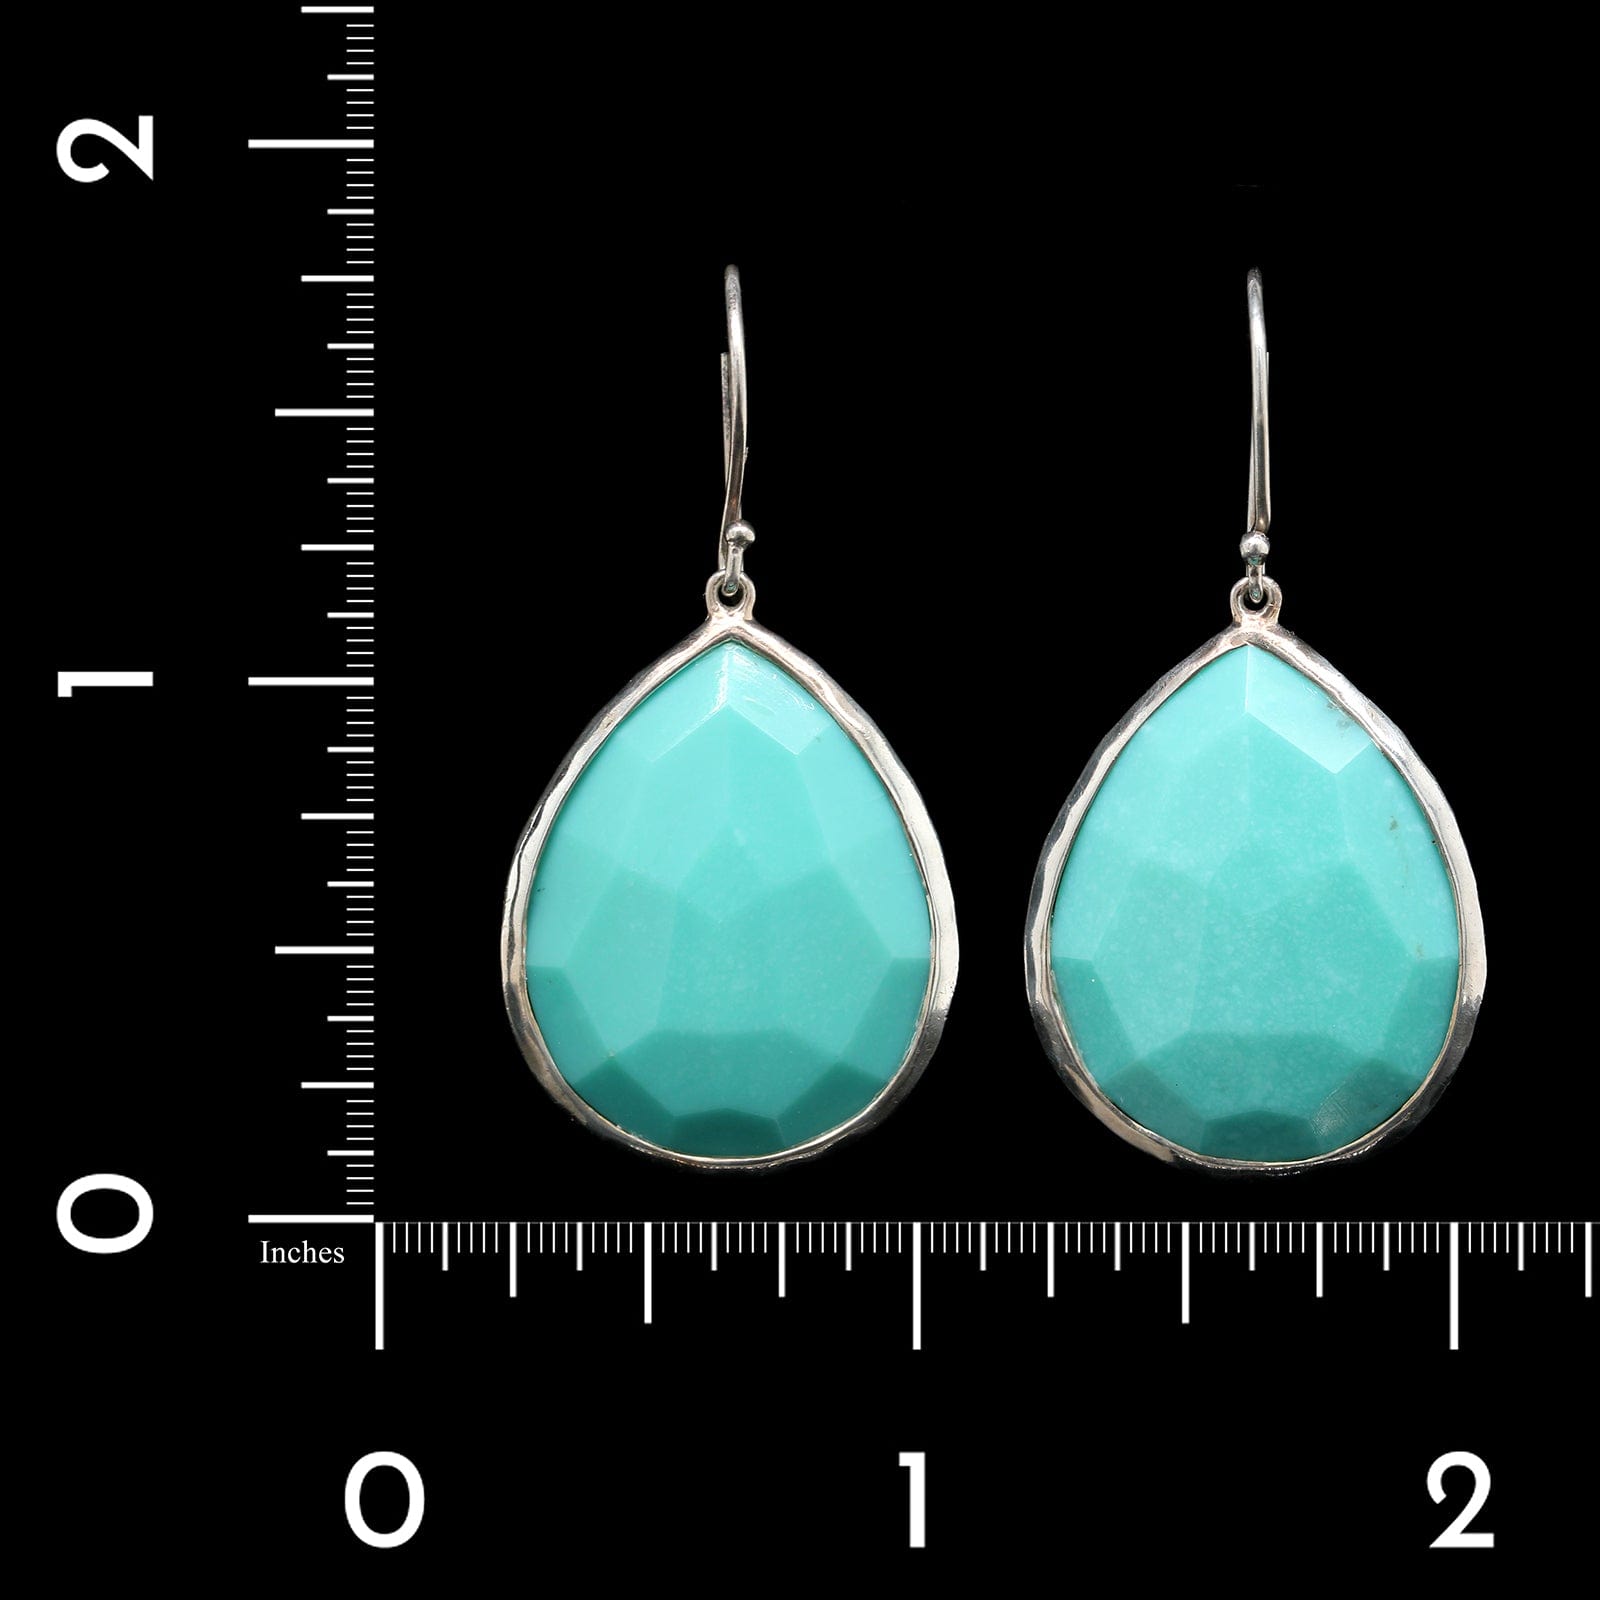 Ippolita Sterling Silver Estate Turquoise Rock Candy Tear Drop Earrings